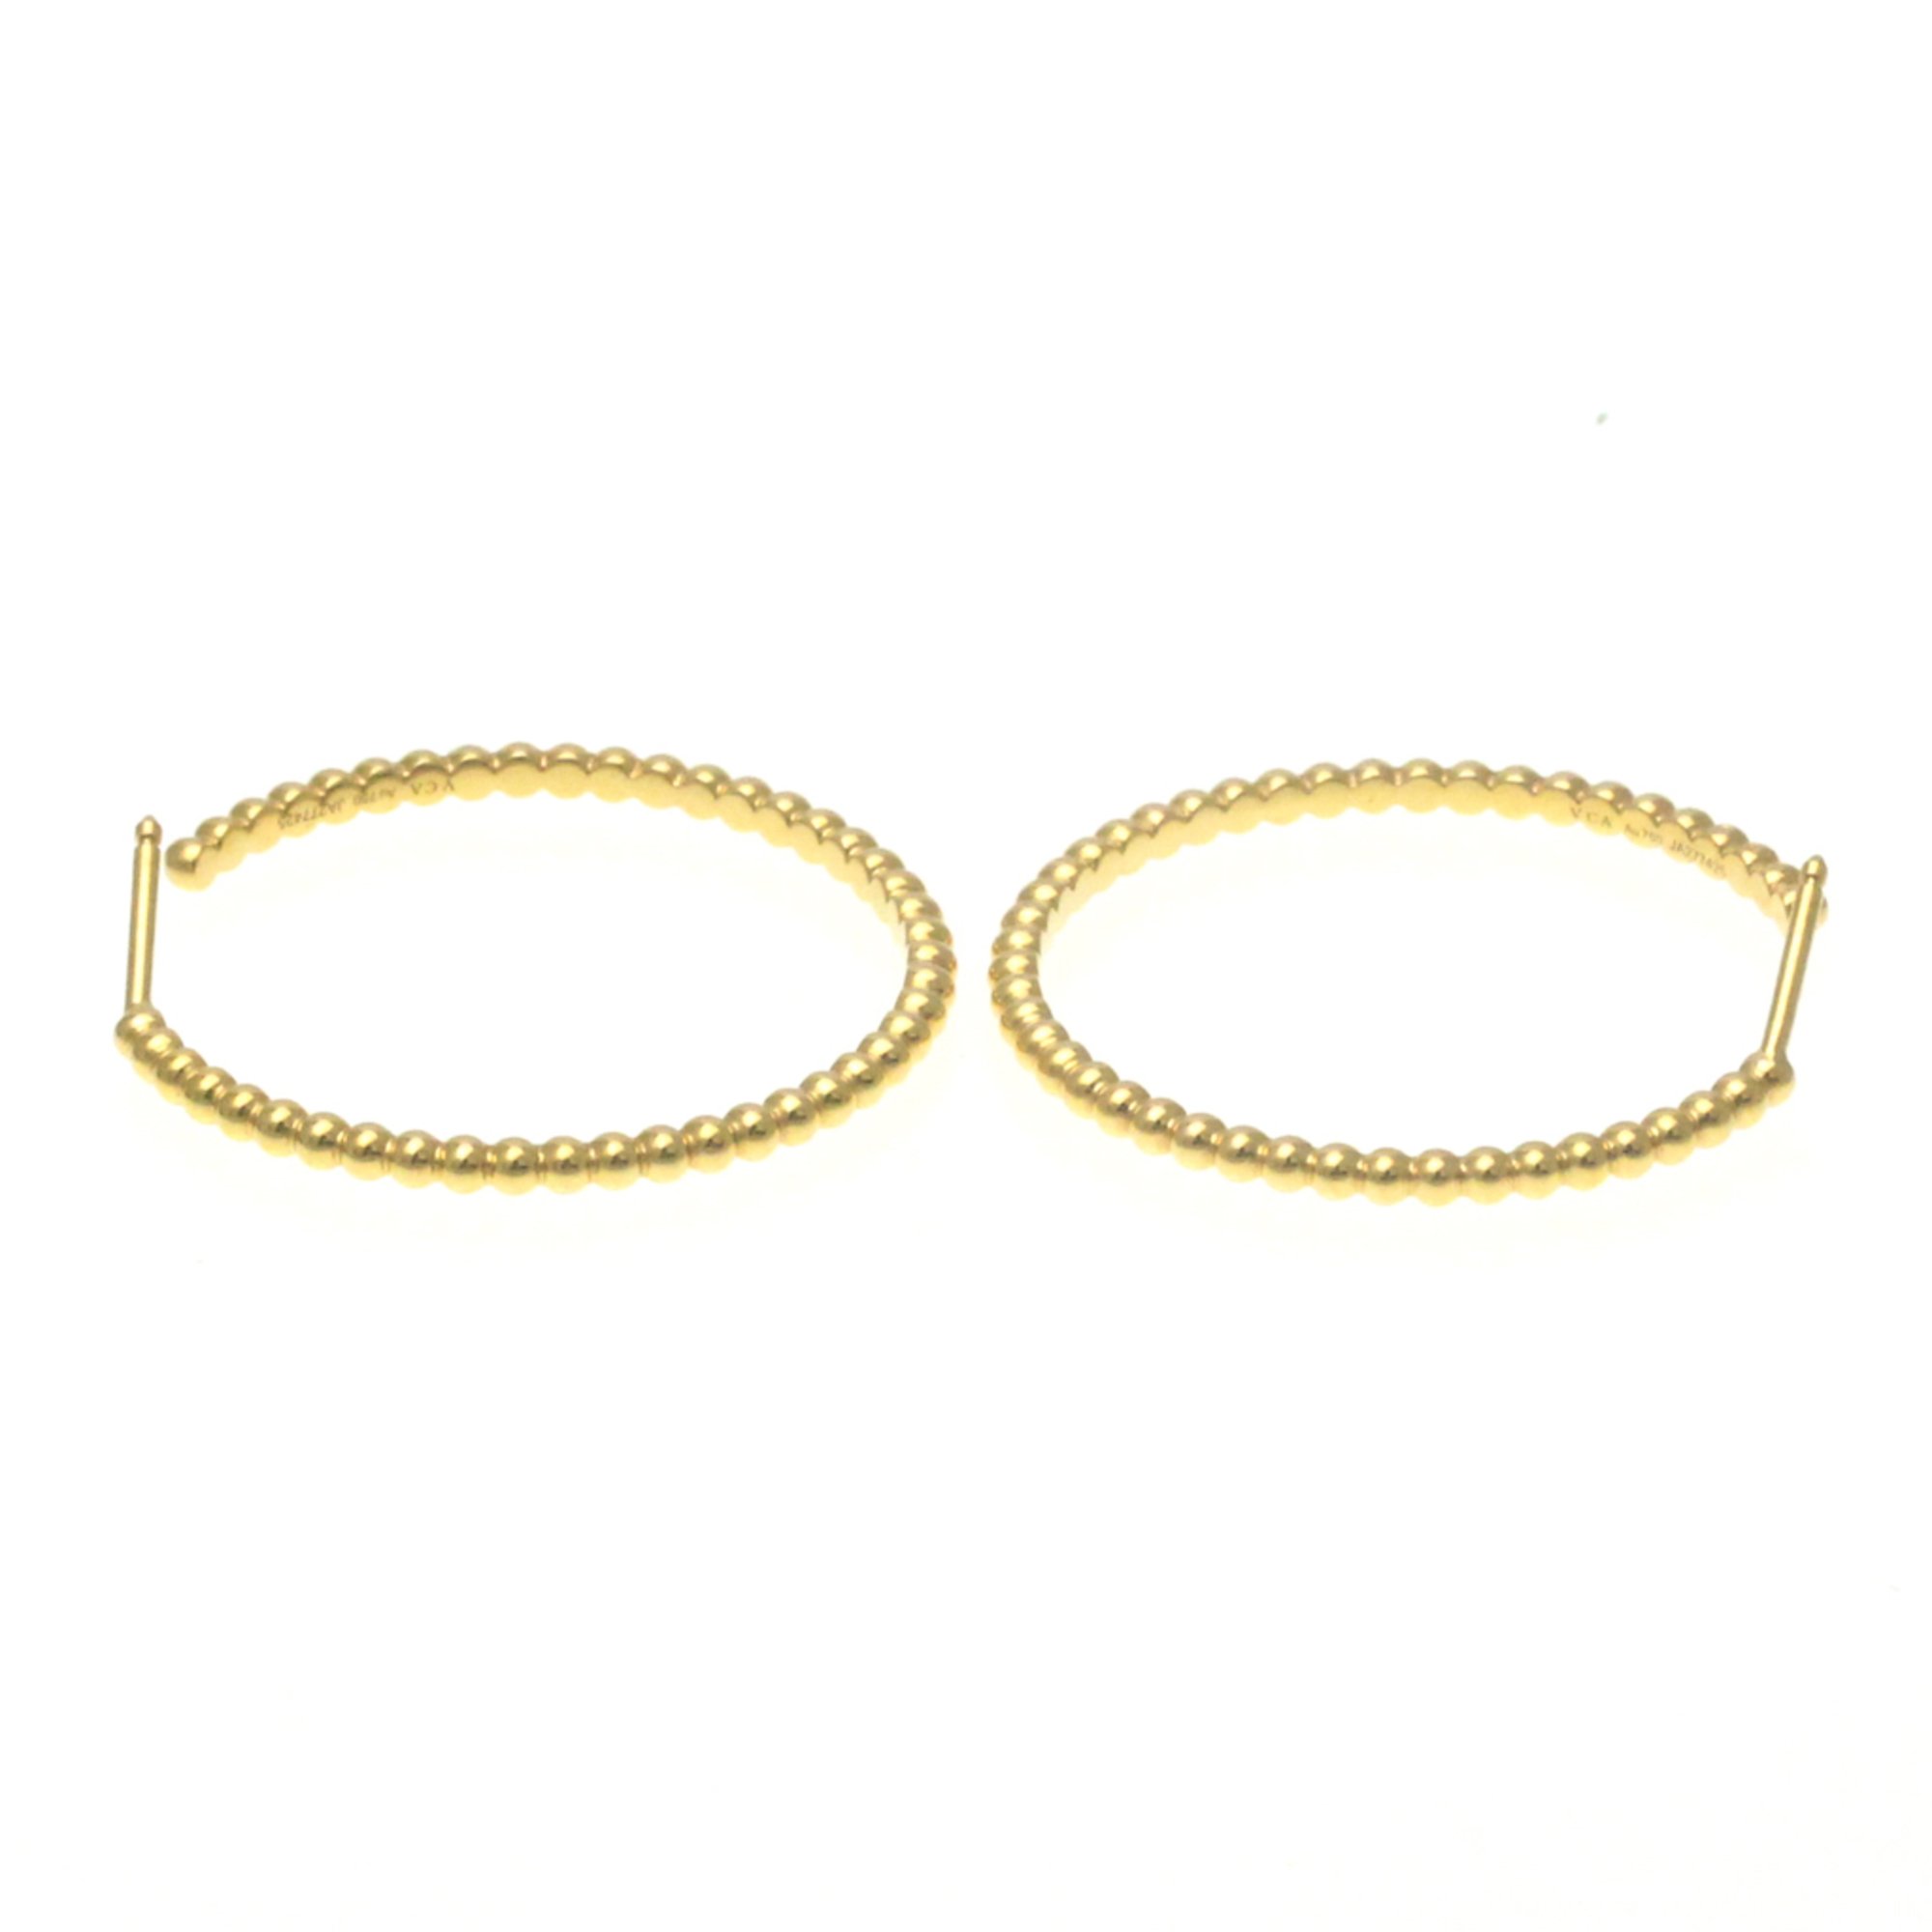 Van Cleef & Arpels Perlee Pearls Of Gold Hoop Earrings Small Model No Stone Yellow Gold (18K) Hoop Earrings Gold